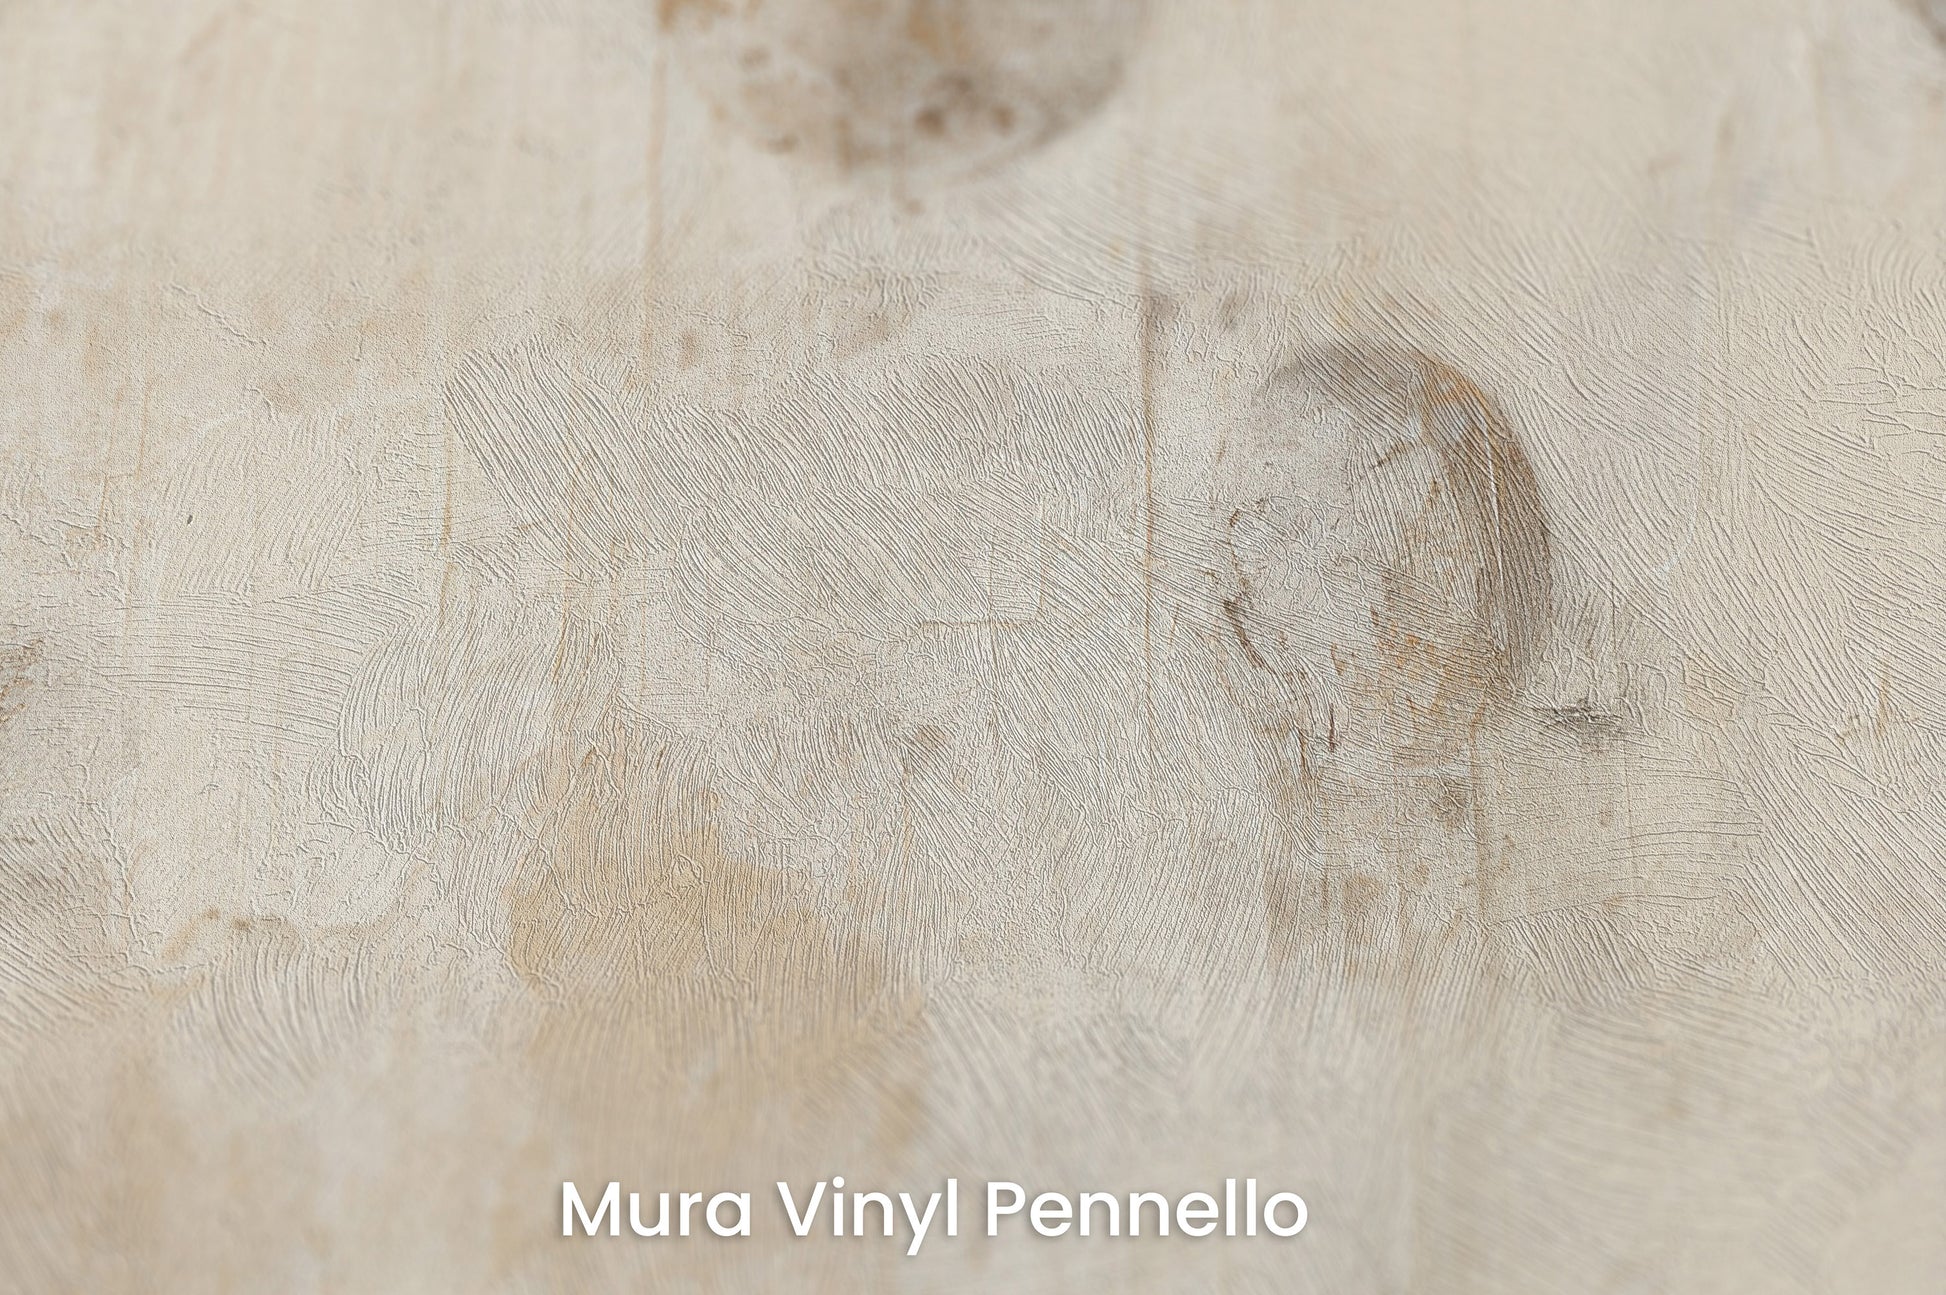 Zbliżenie na artystyczną fototapetę o nazwie VINTAGE PLANETARY MOTIFS na podłożu Mura Vinyl Pennello - faktura pociągnięć pędzla malarskiego.